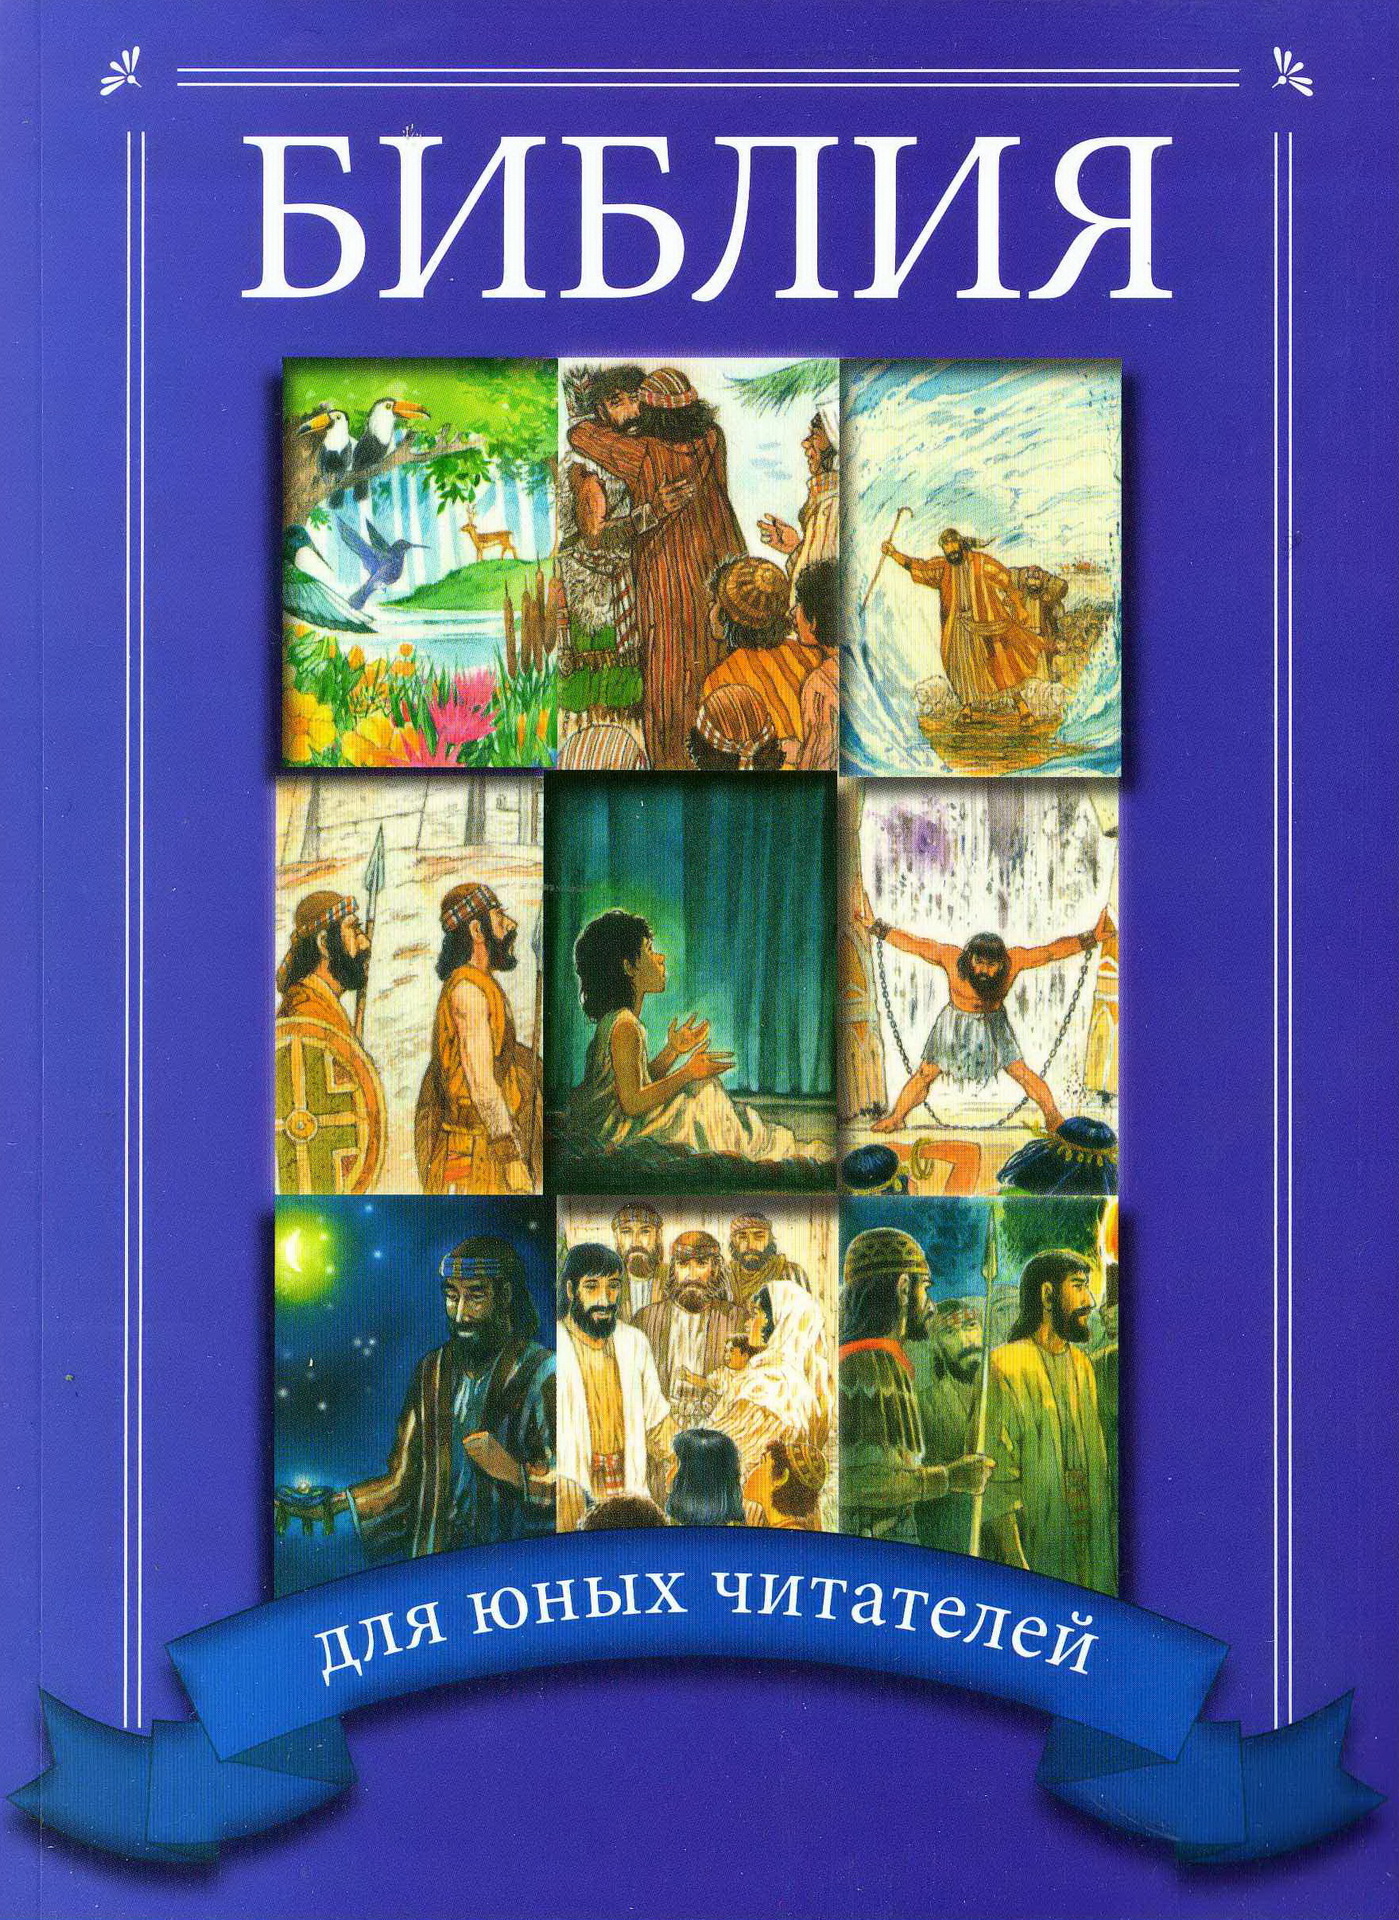 ФОТО Liana.Market BIBLEFORCHILD Библия для детей (подарок)